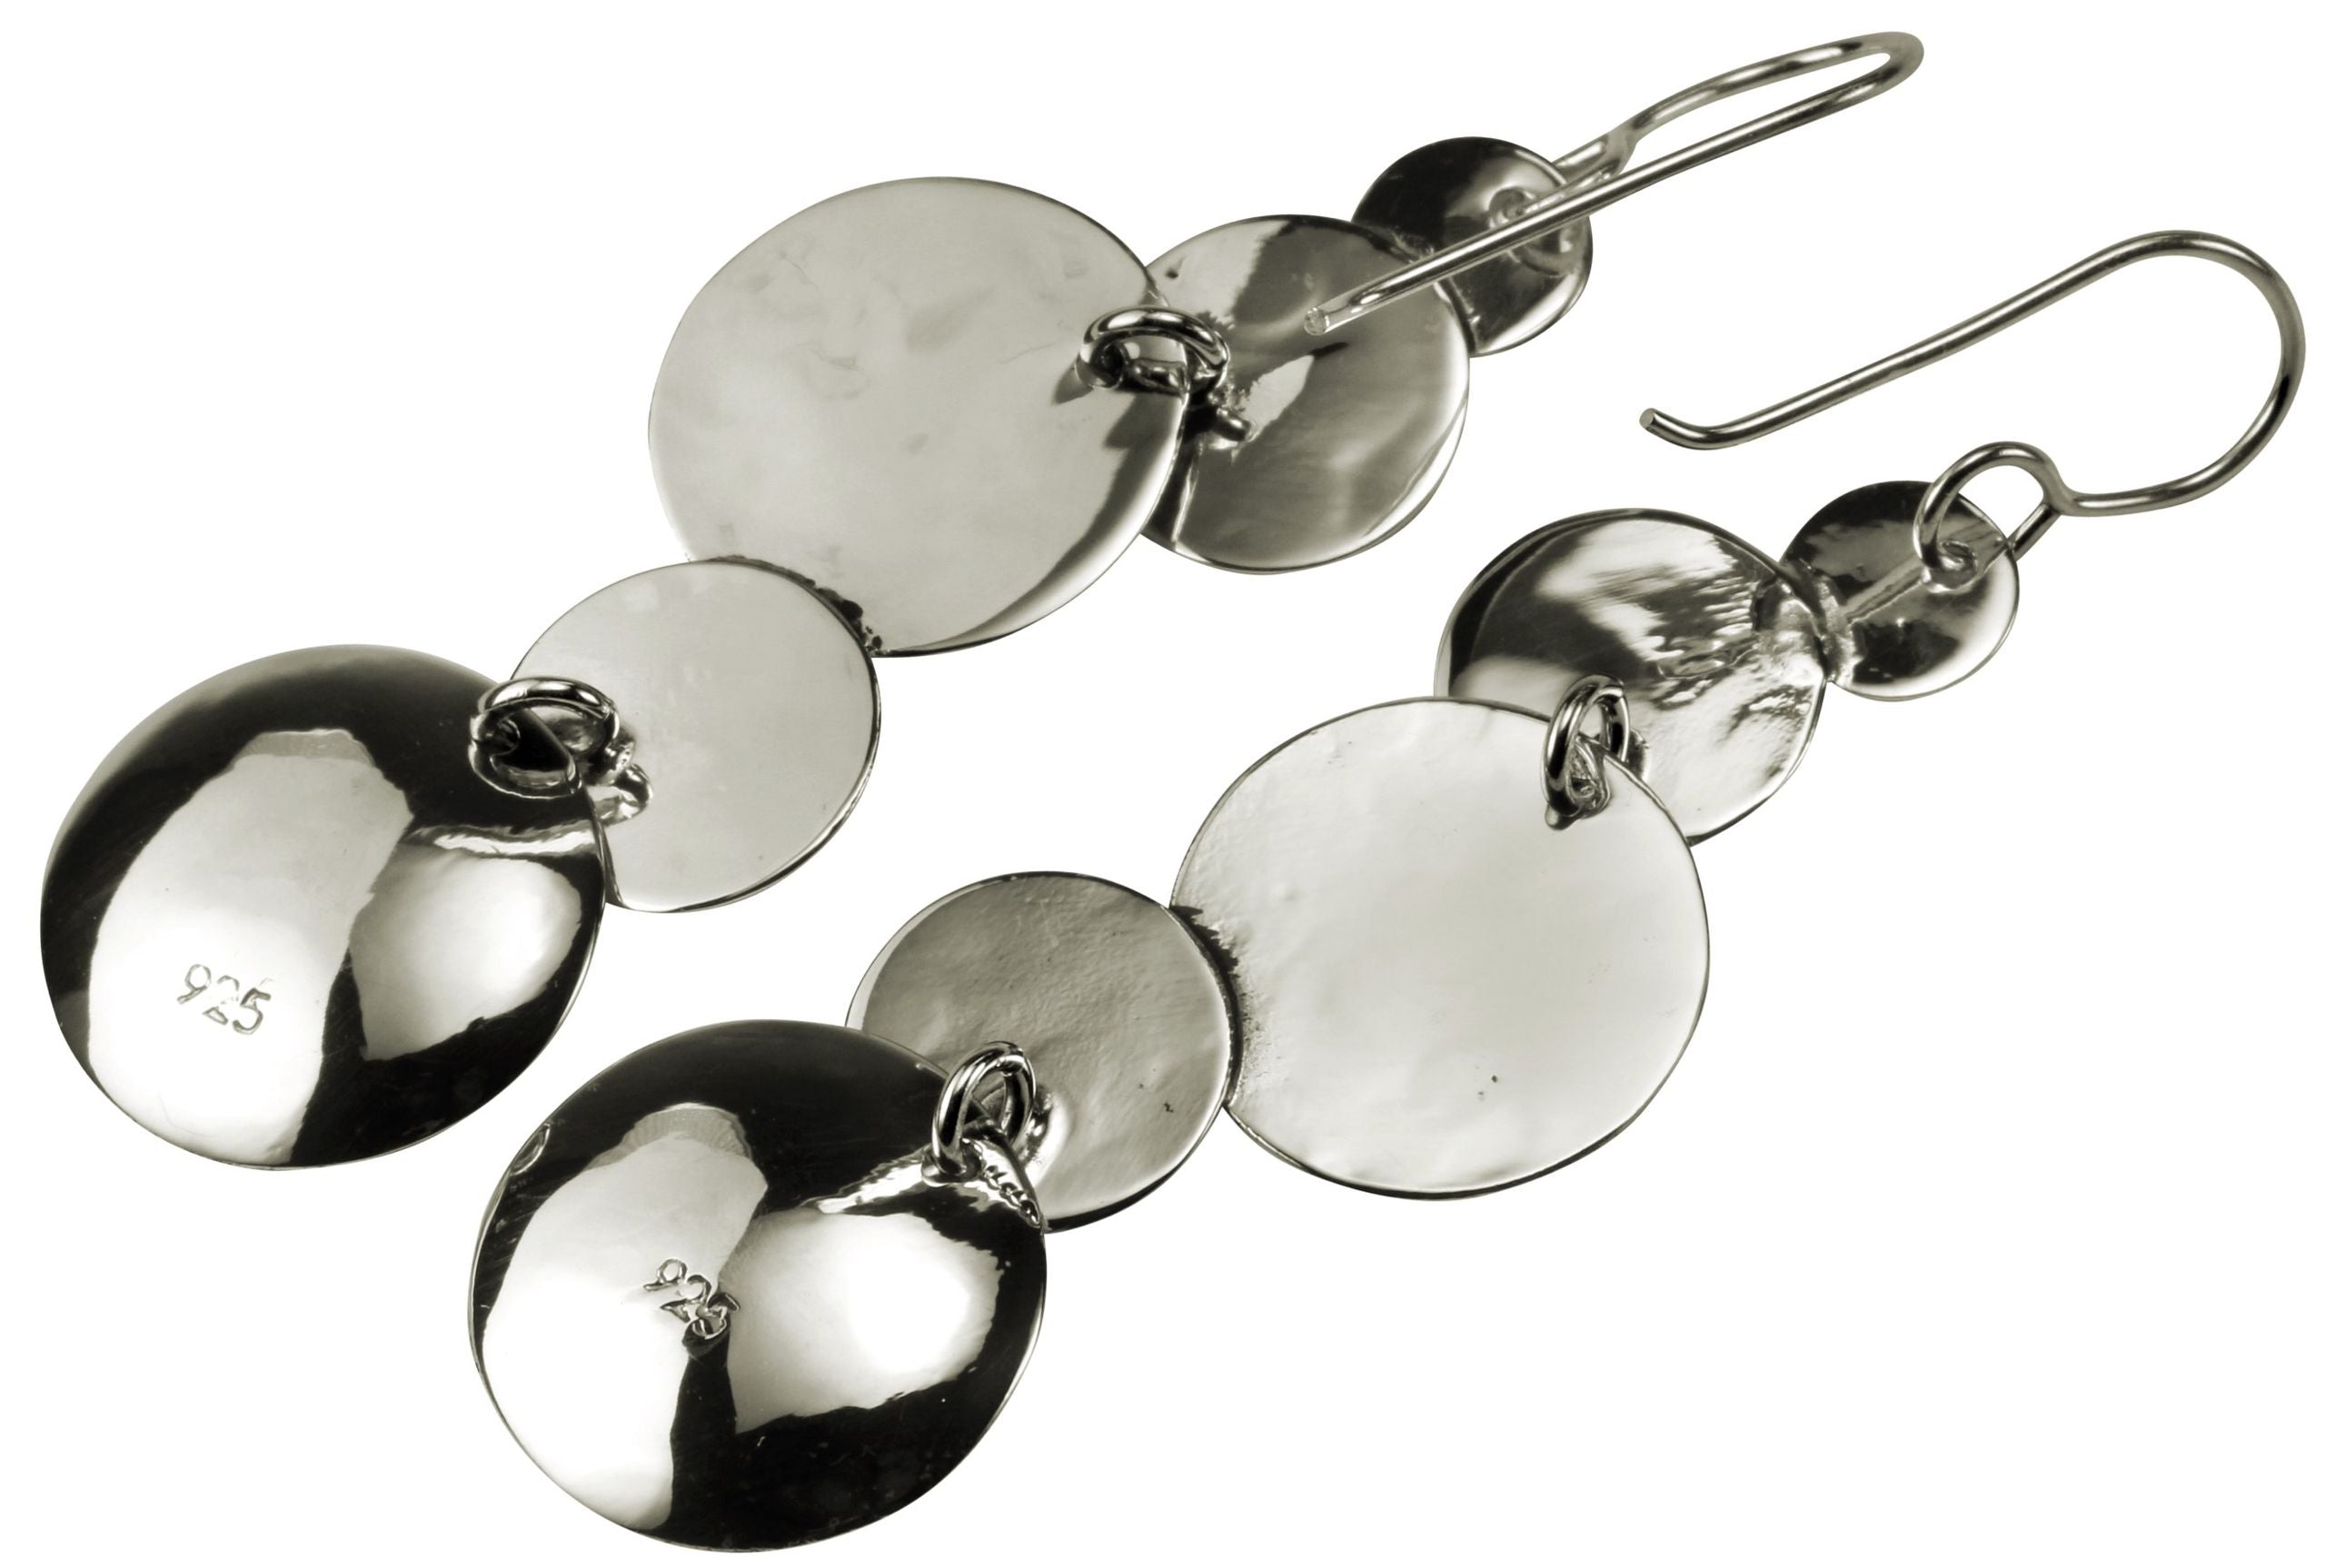 Rückseite der gehämmerten Ohrhänger aus Silber für Damen. Die Ohrhänger bestehen aus fünf verschieden großen geschmiedeten Silberscheiben, die fest miteinander verbunden sind.